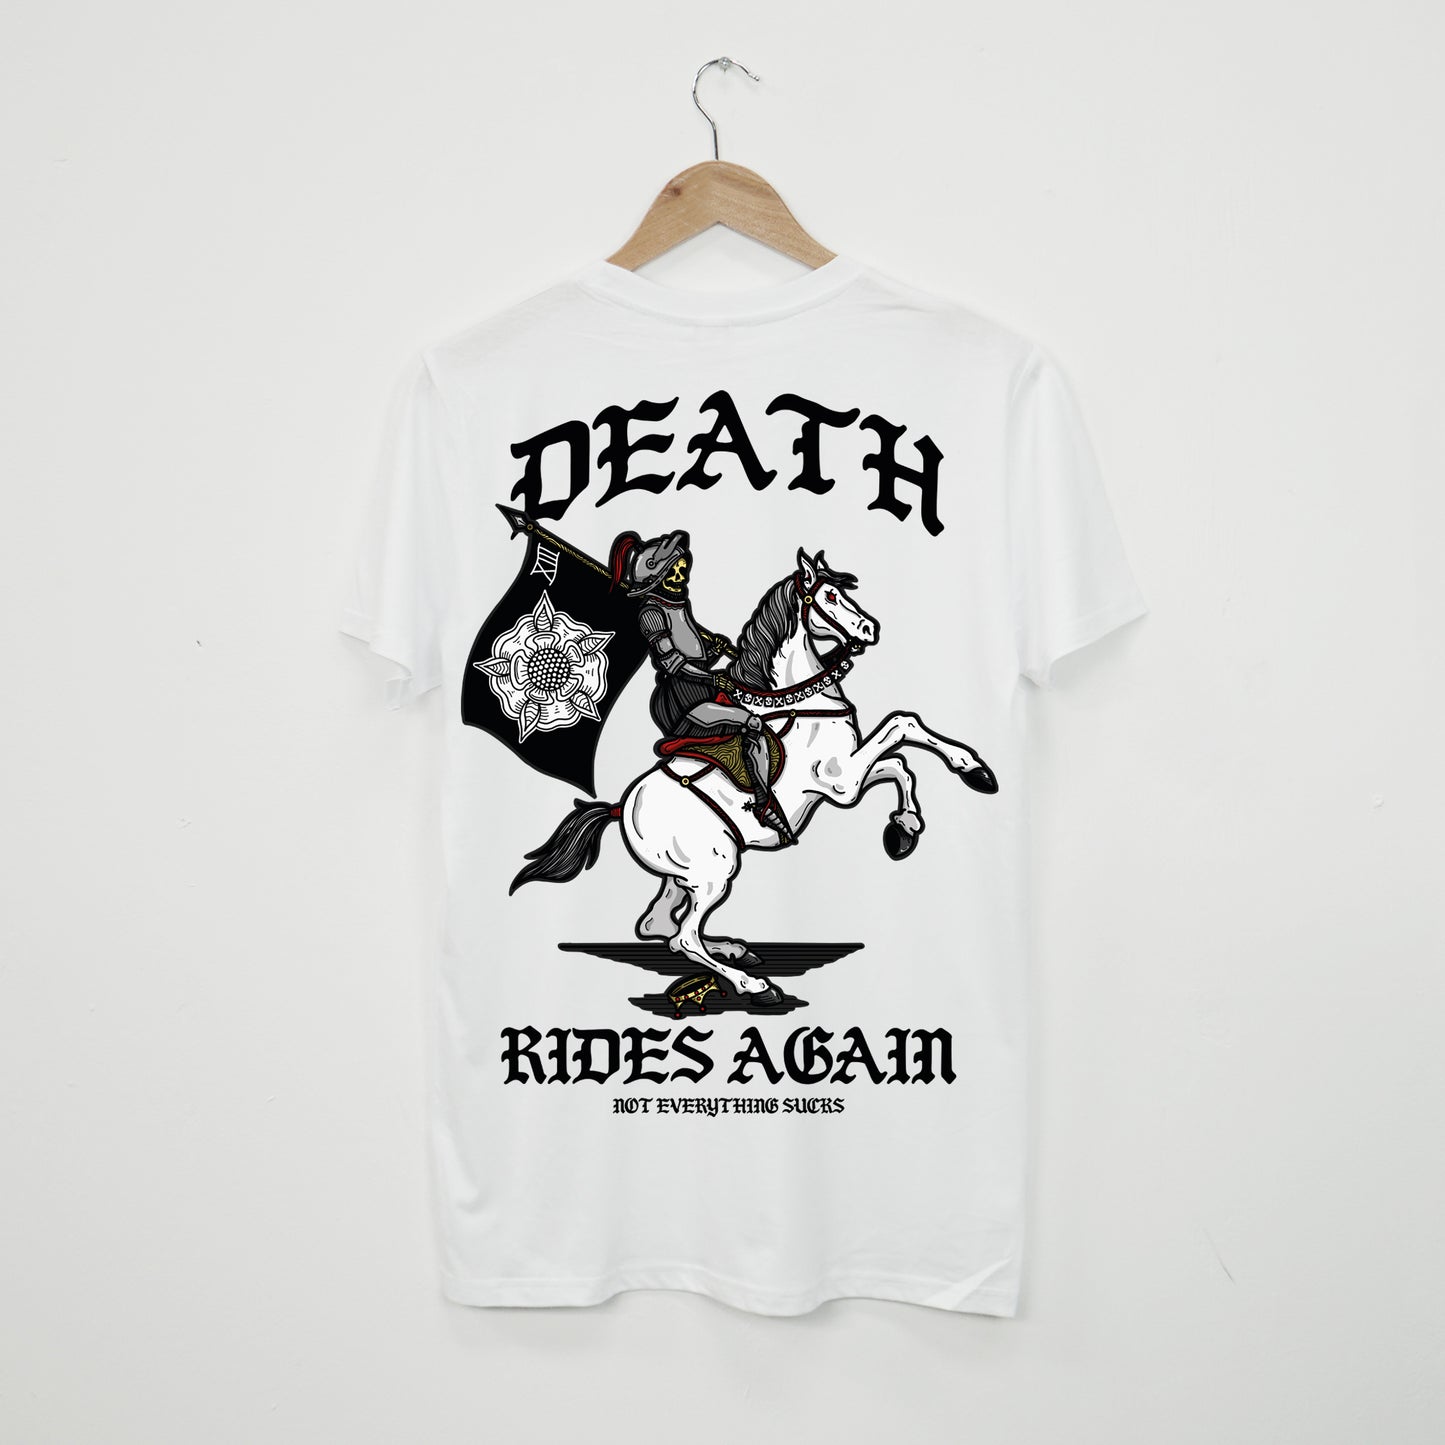 Death Rides Again T-Shirt